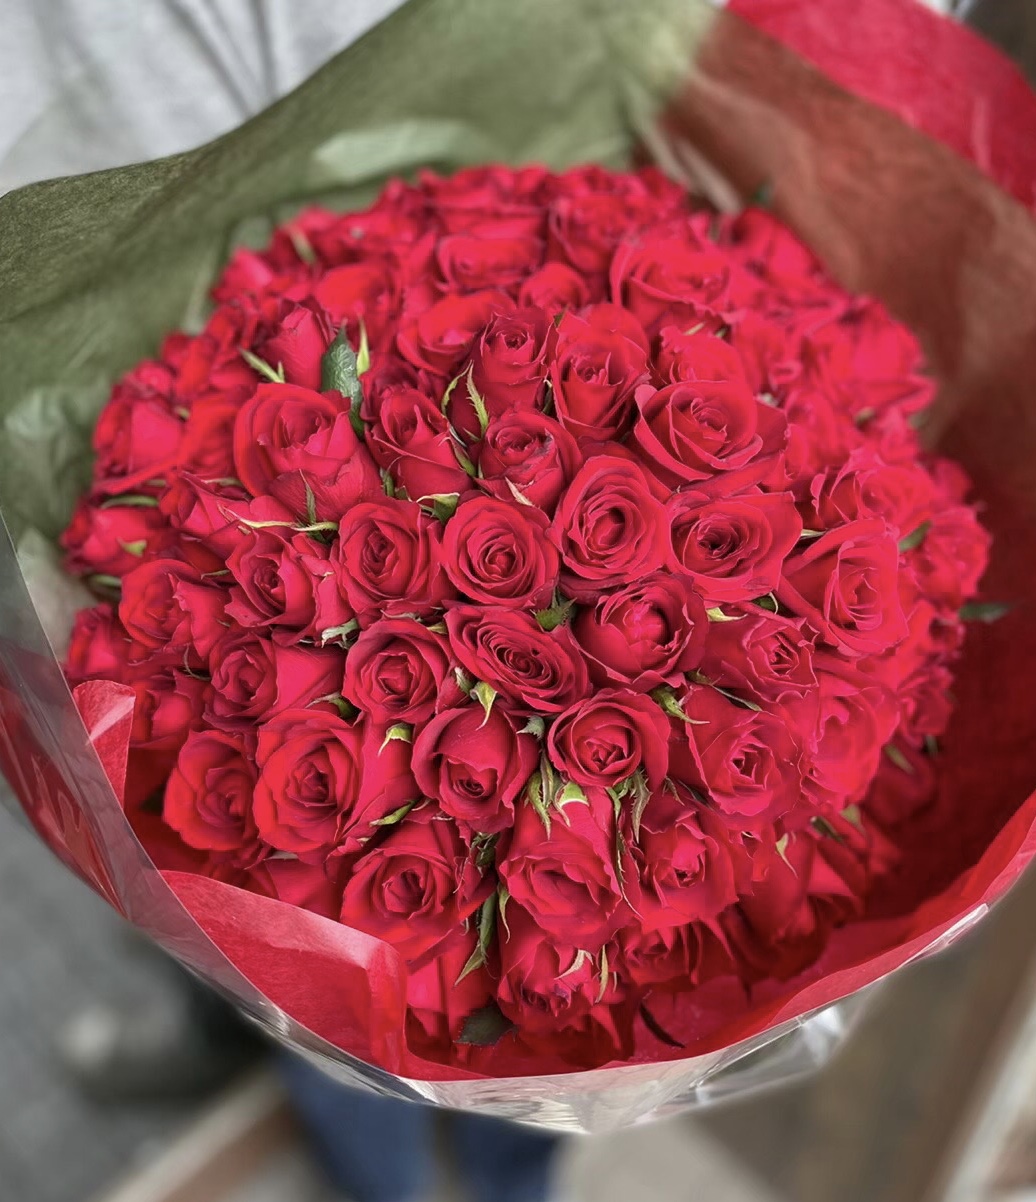 【特別な日の贈り物に】赤いバラ100本の花束